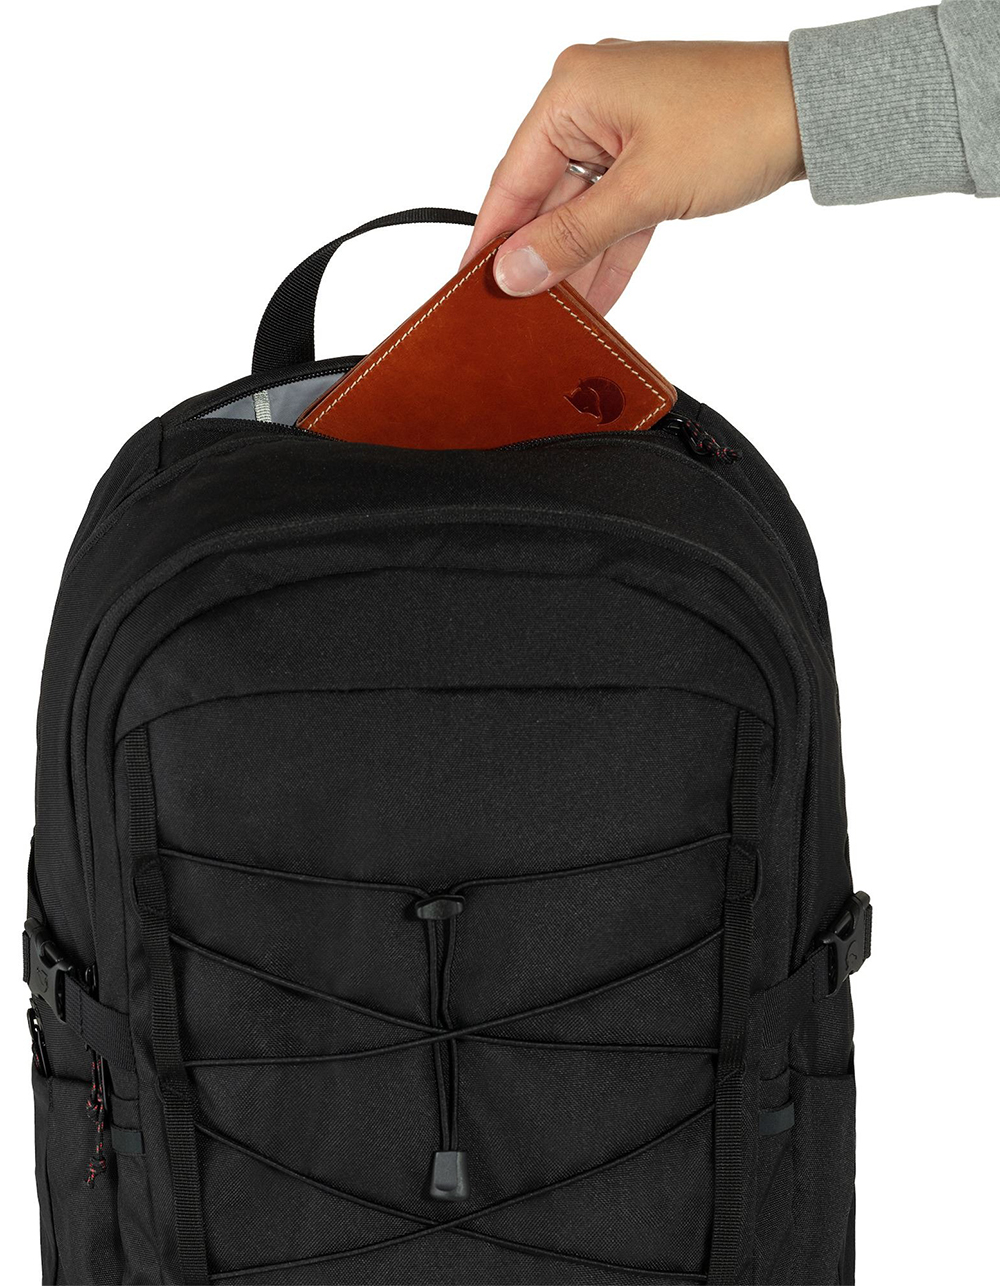 Fjallraven Skule 28 Backpack - Unisex, Day Packs